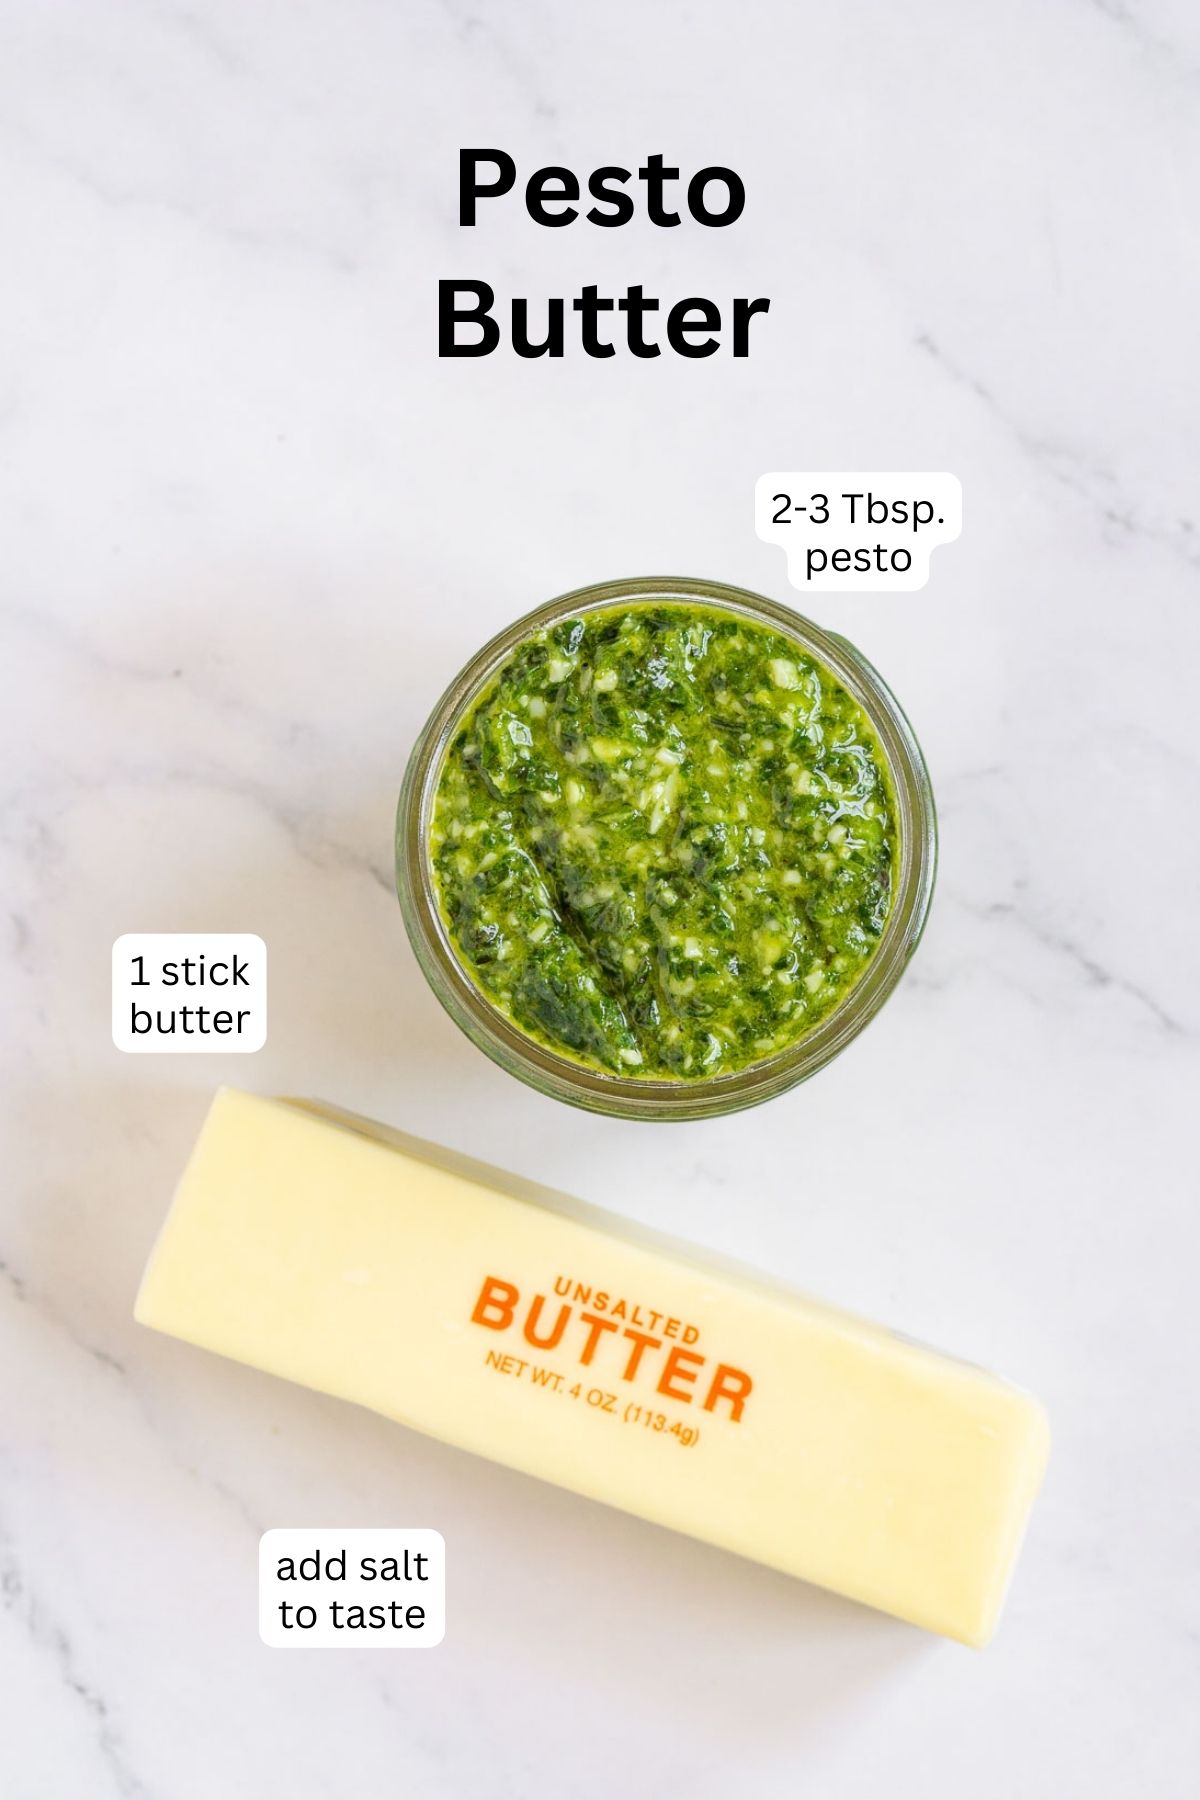 Ingredients to make pesto butter